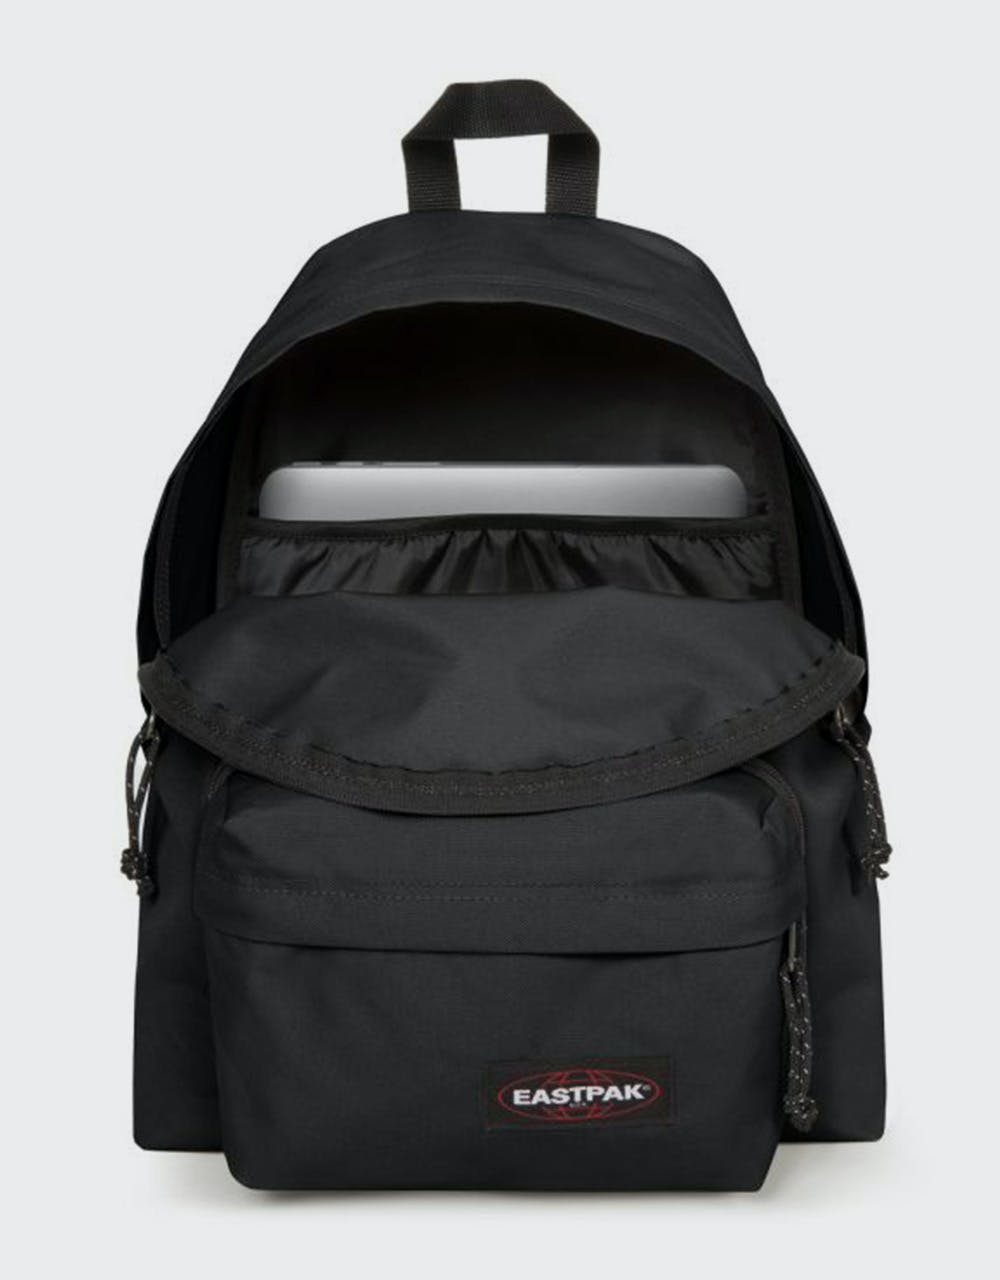 Eastpak Padded Travel'R Backpack - Black